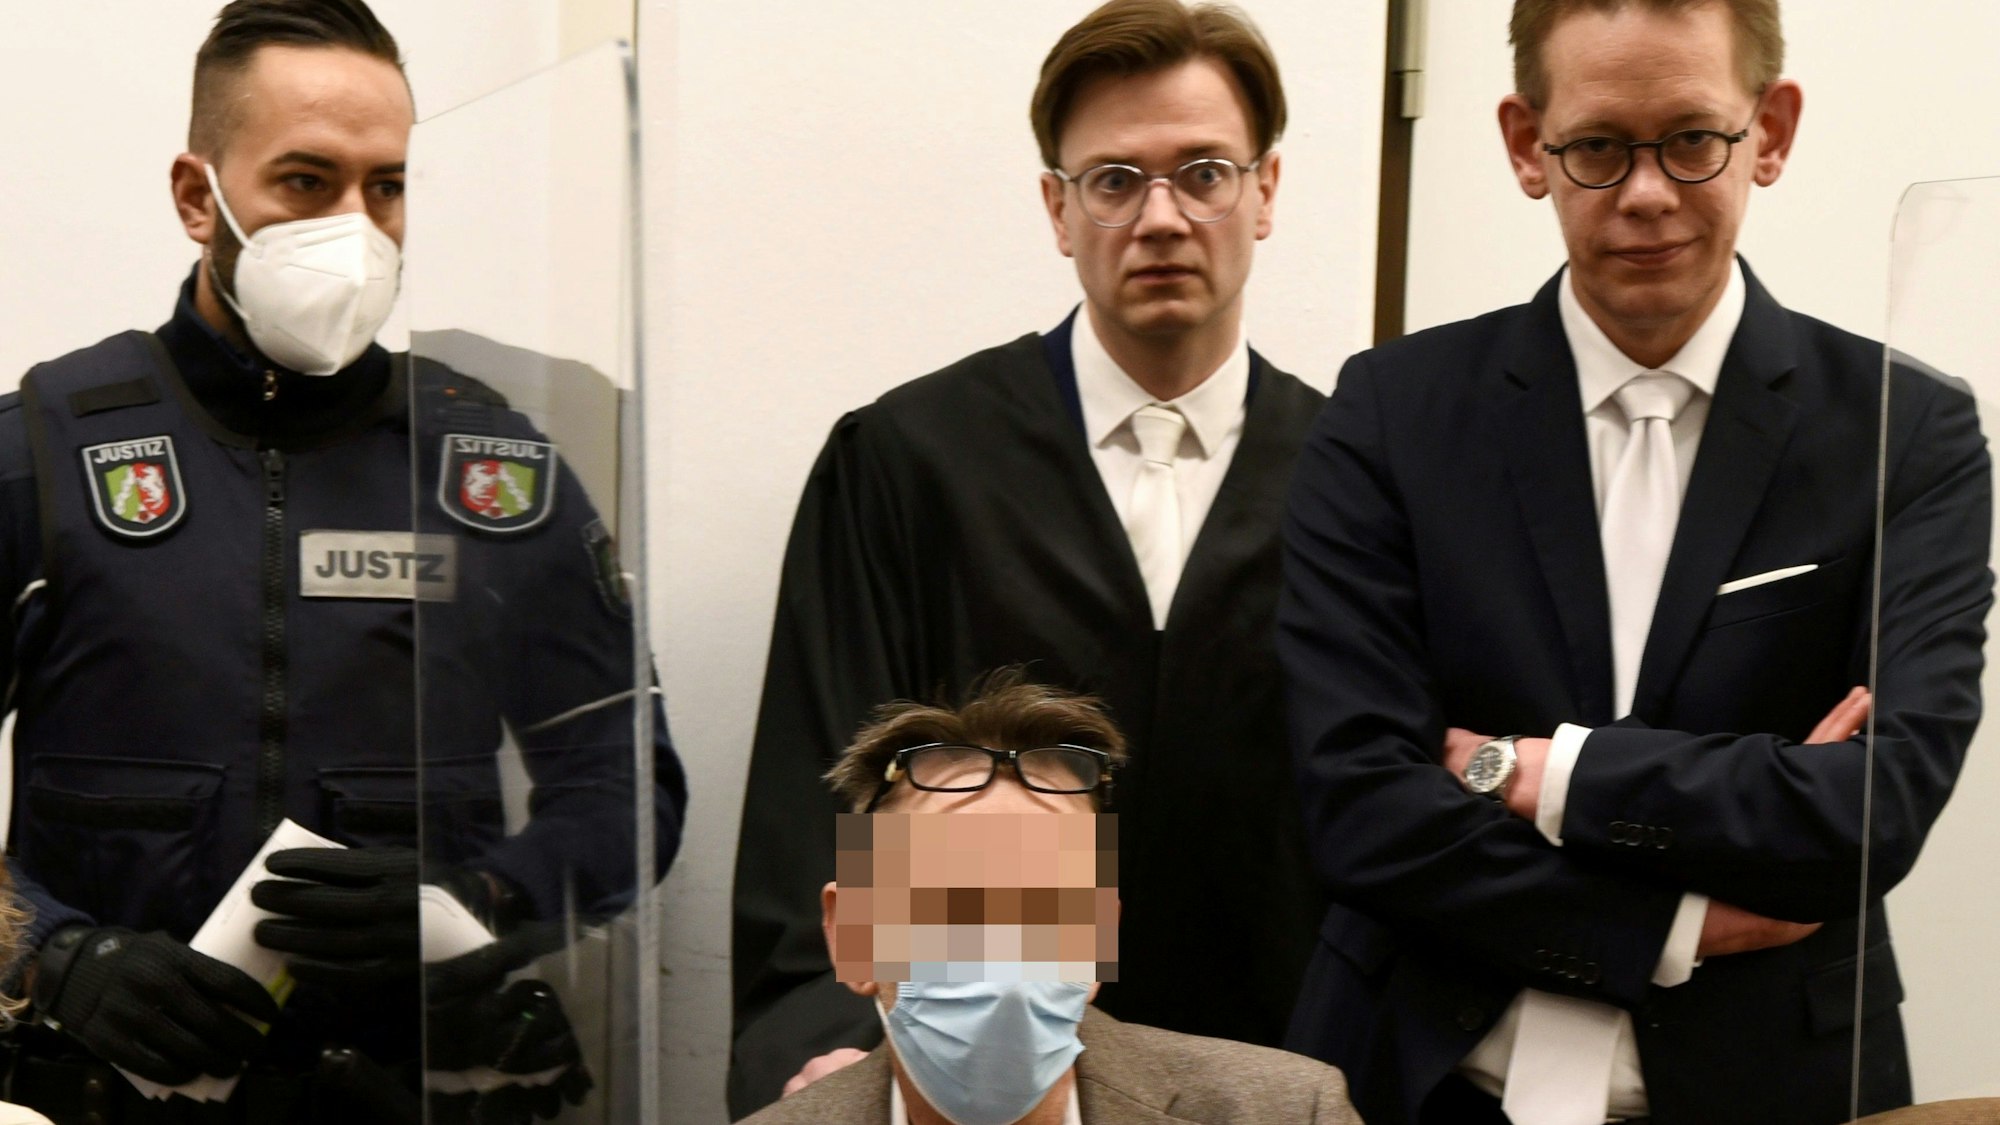 Der mutmaßliche Drach-Komplize Eugen W. beim Prozessauftakt mit den Verteidigern Sebastian Dobritzsch und Wolfgang Heer (r.) und einem Wachtmeister.